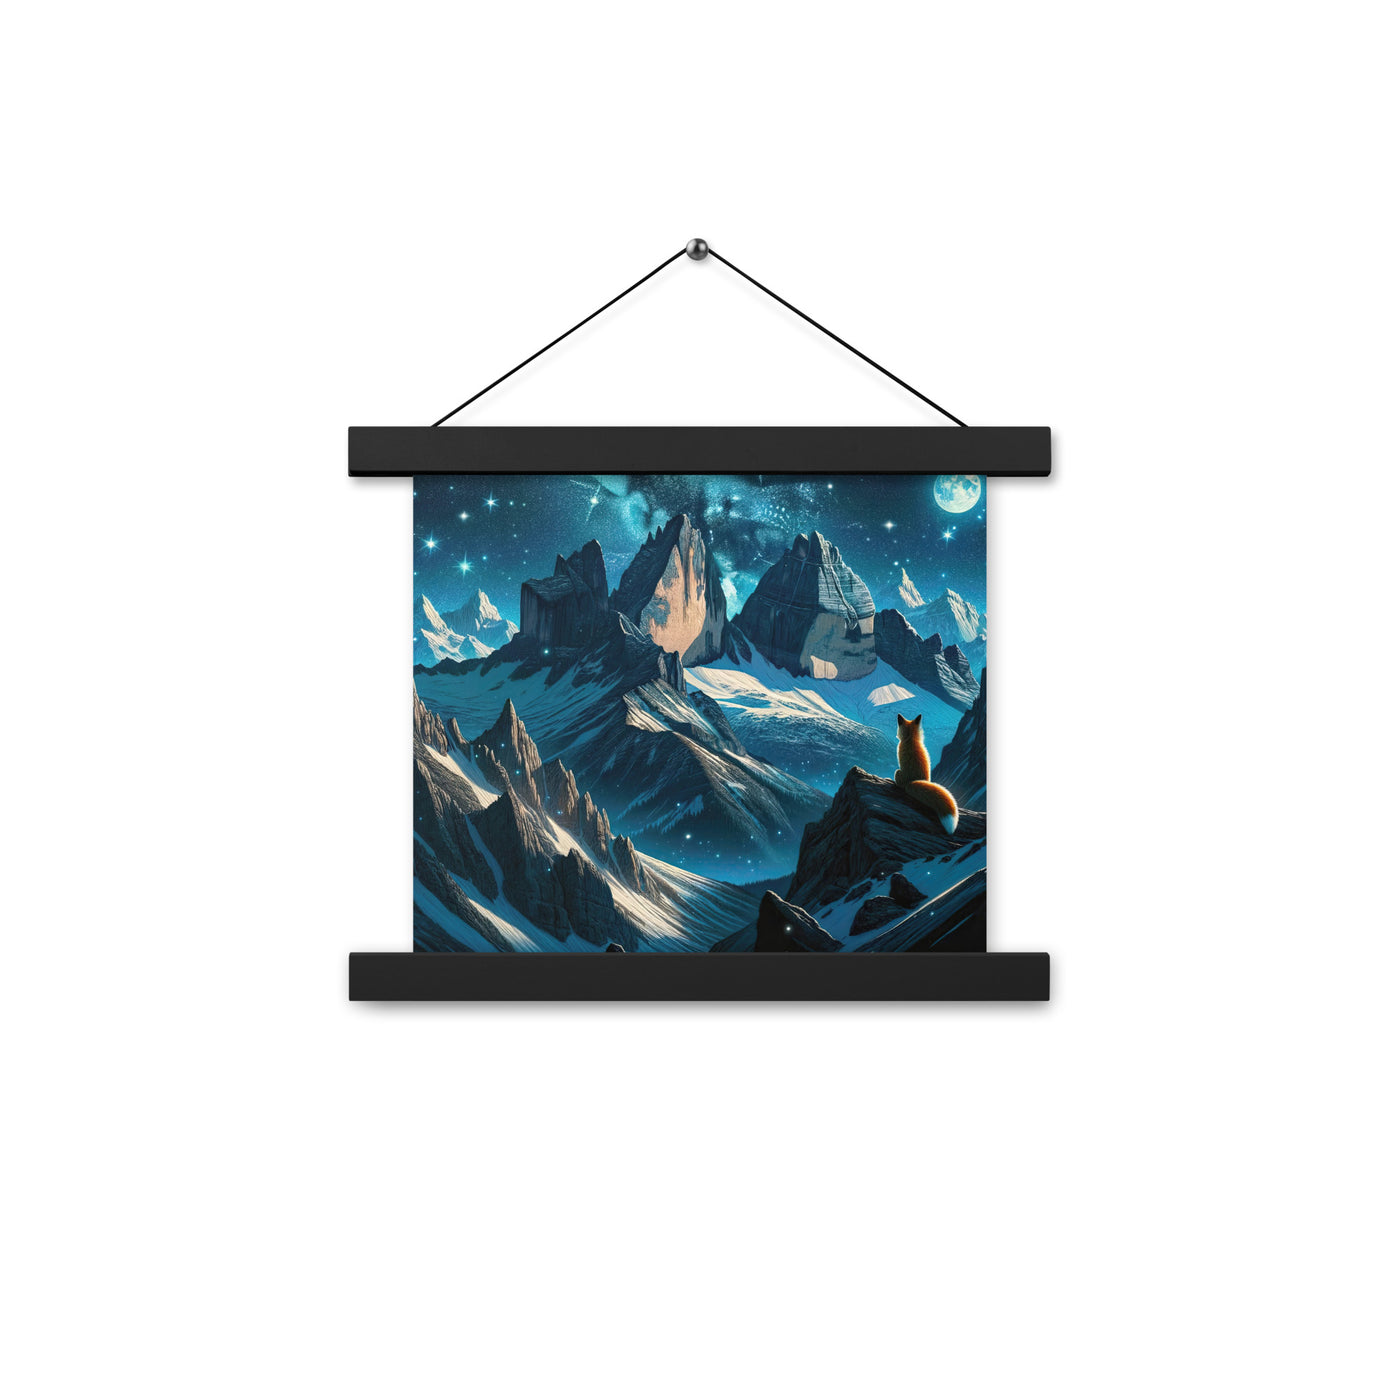 Fuchs in Alpennacht: Digitale Kunst der eisigen Berge im Mondlicht - Premium Poster mit Aufhängung camping xxx yyy zzz 25.4 x 25.4 cm